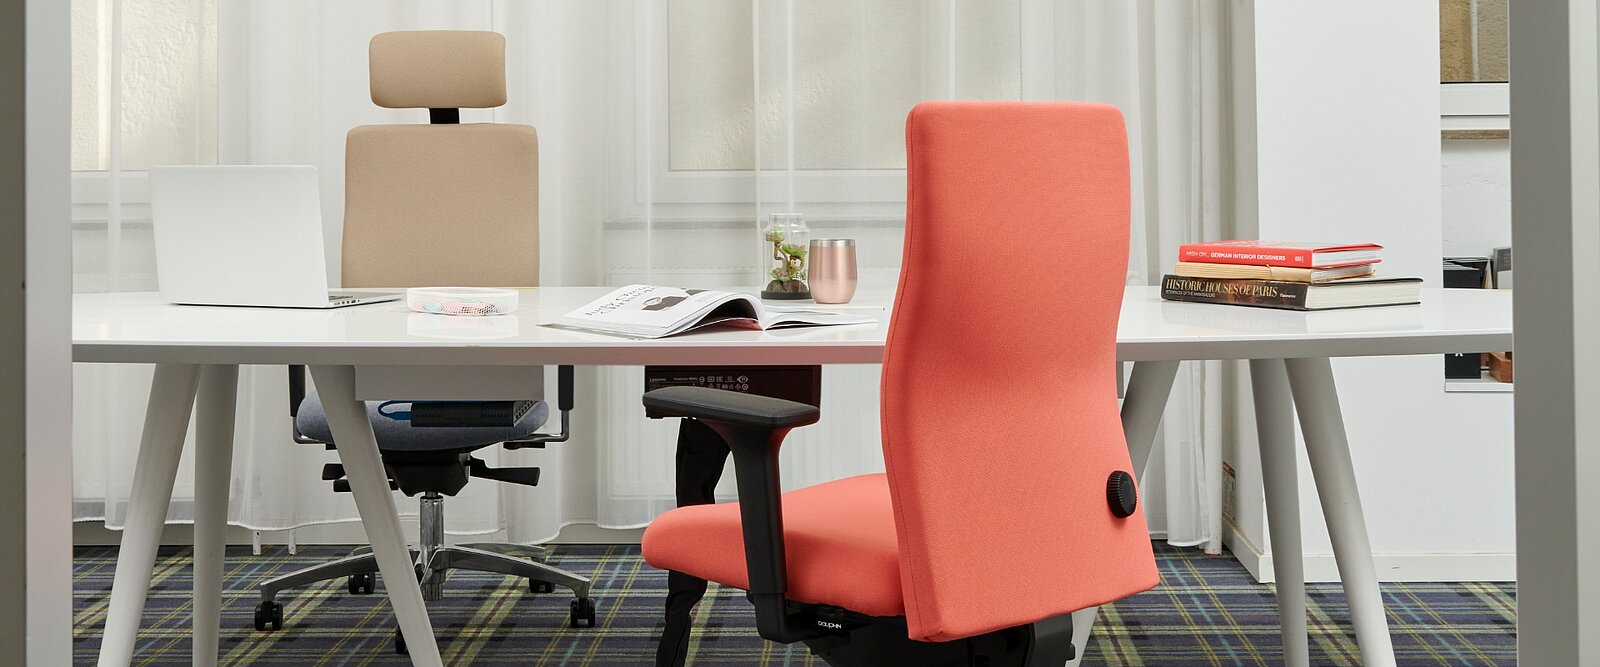 De shape economy2 comfort-bureaustoelen met rondom gestoffeerde rugleuning hebben een anatomische rugleuningcontour voor optimale ondersteuning tijdens het werken.